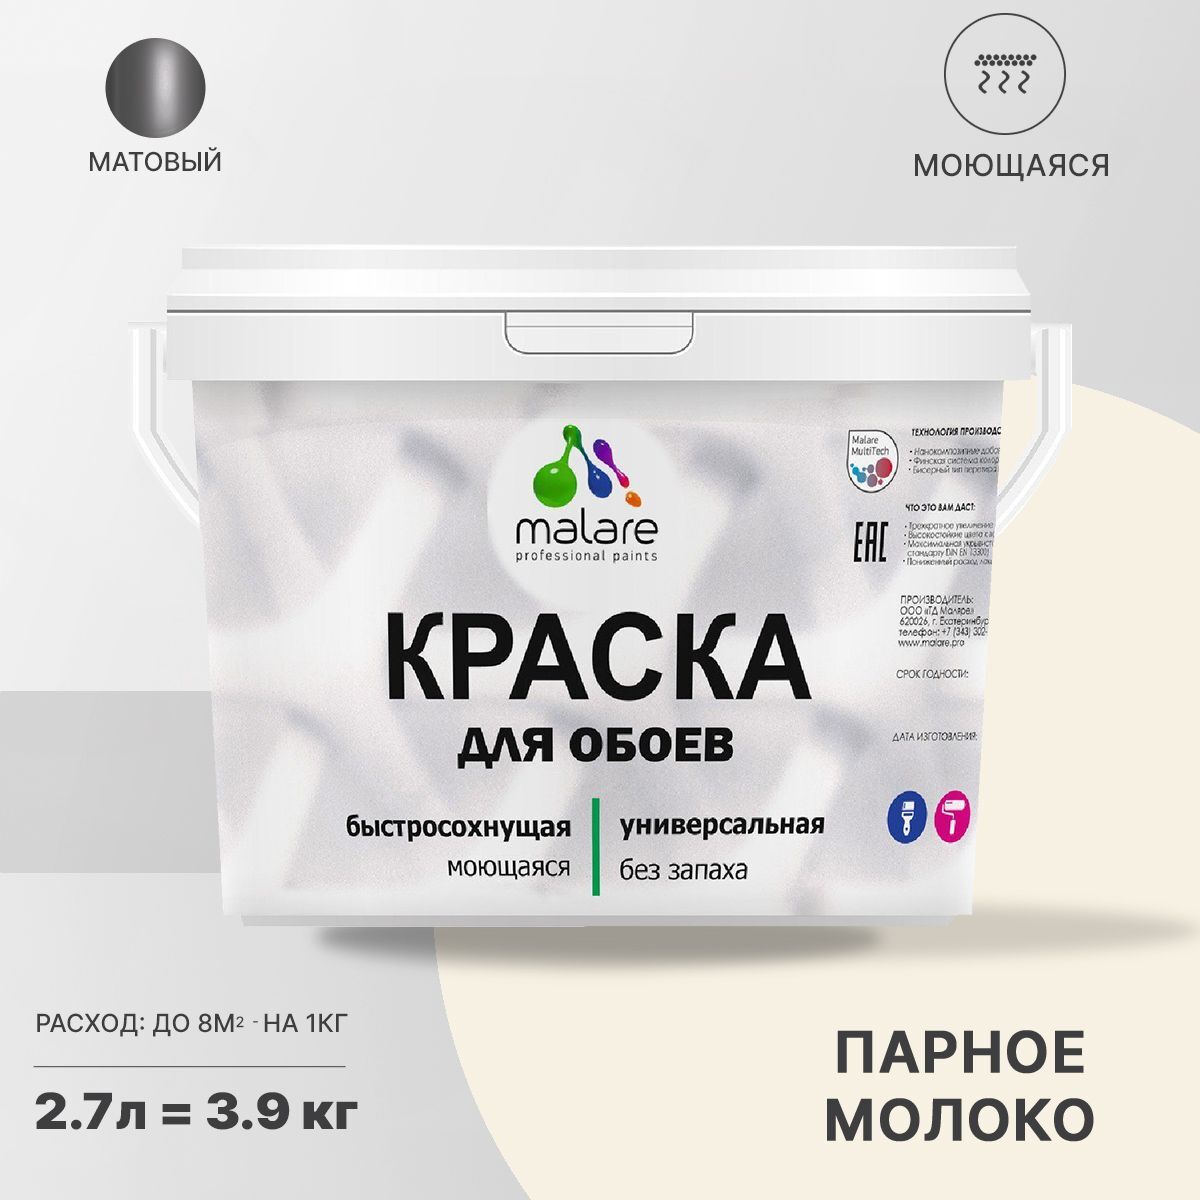 Краска Malare Professional специализированная Акриловая, 3,9 кг парное молоко